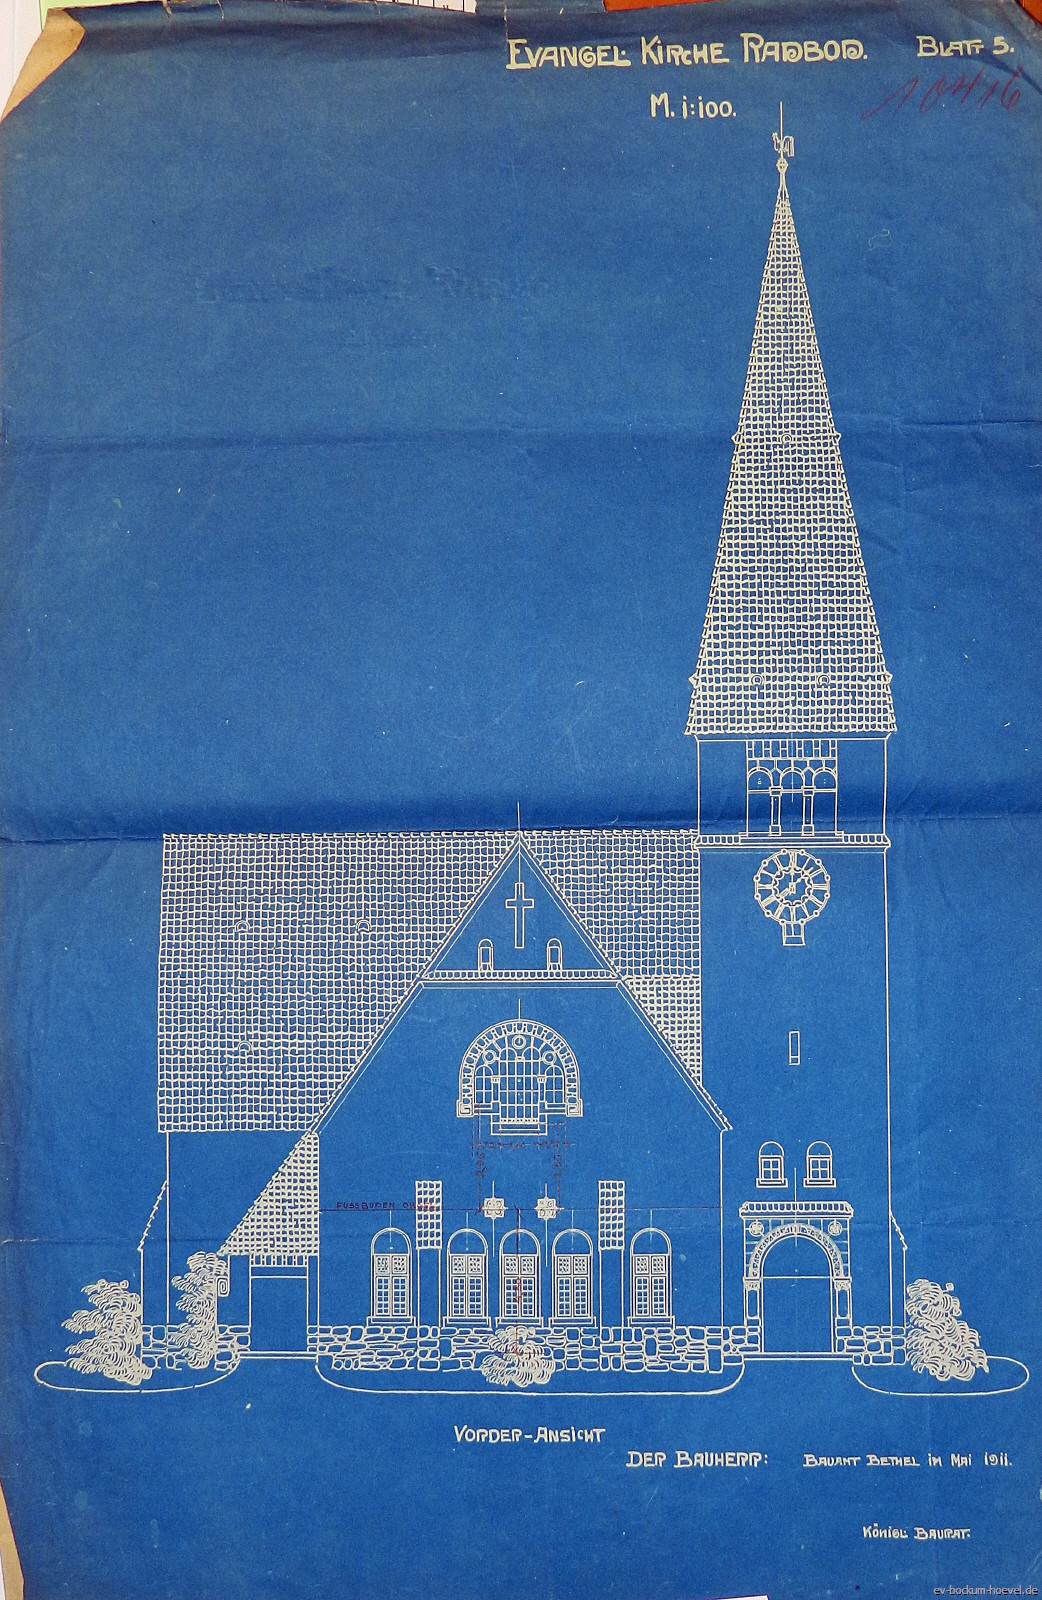 1909entwurfevkircheradbodvorderansicht